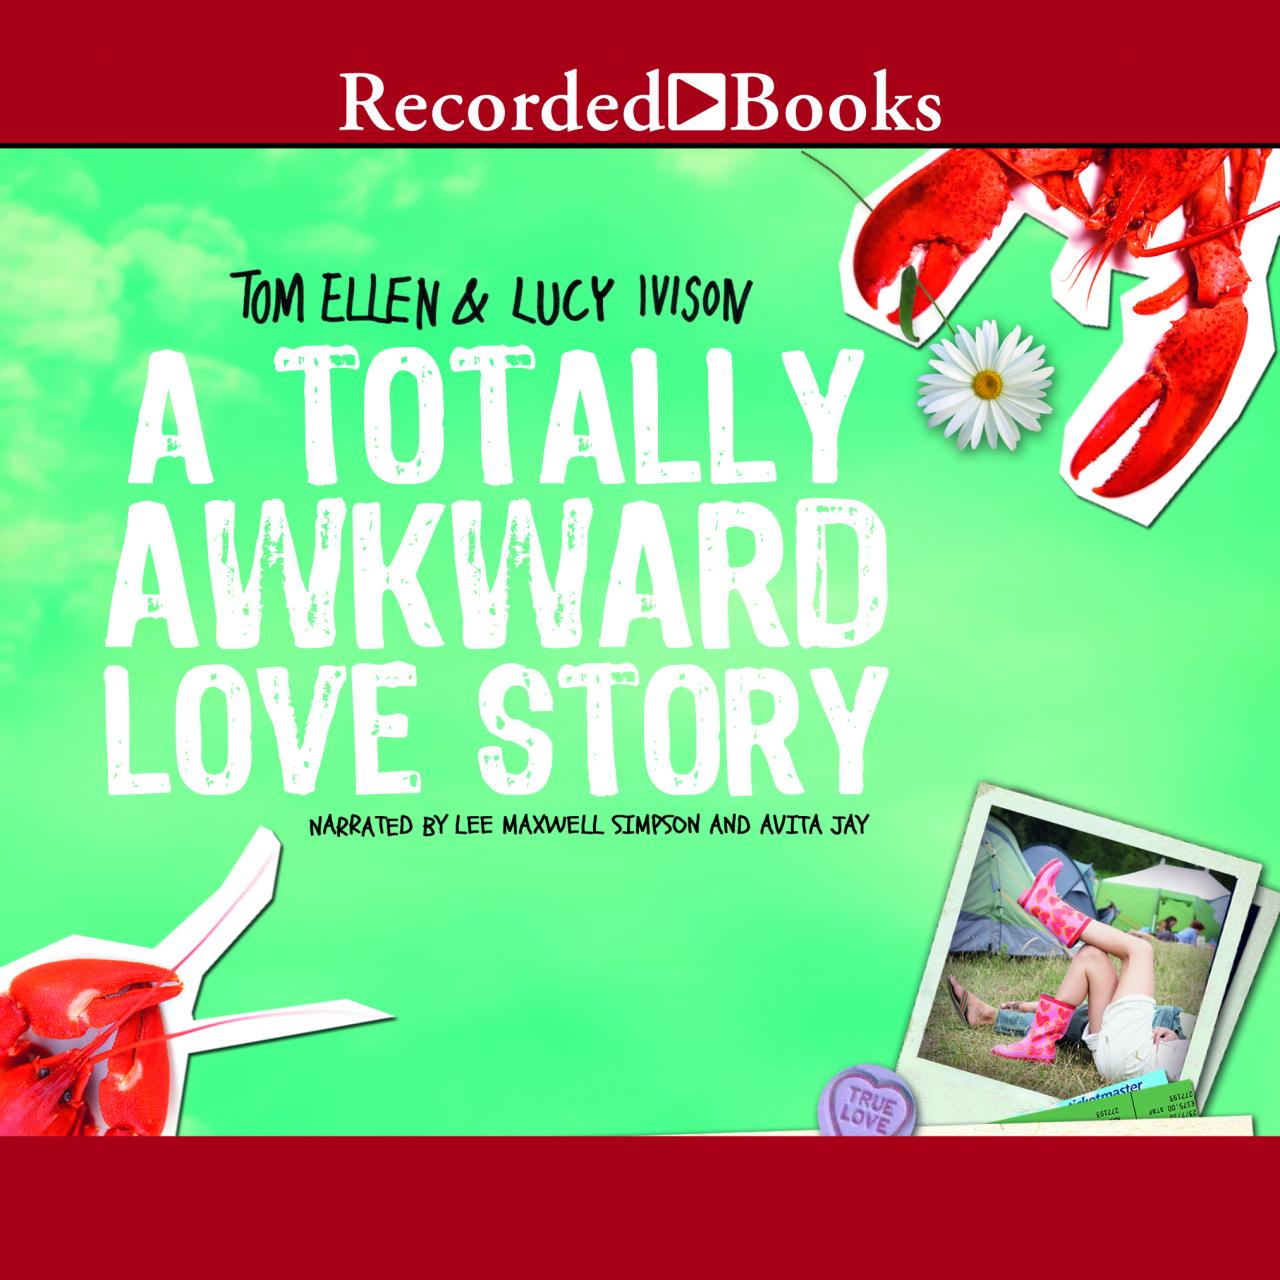 An awkward love story book